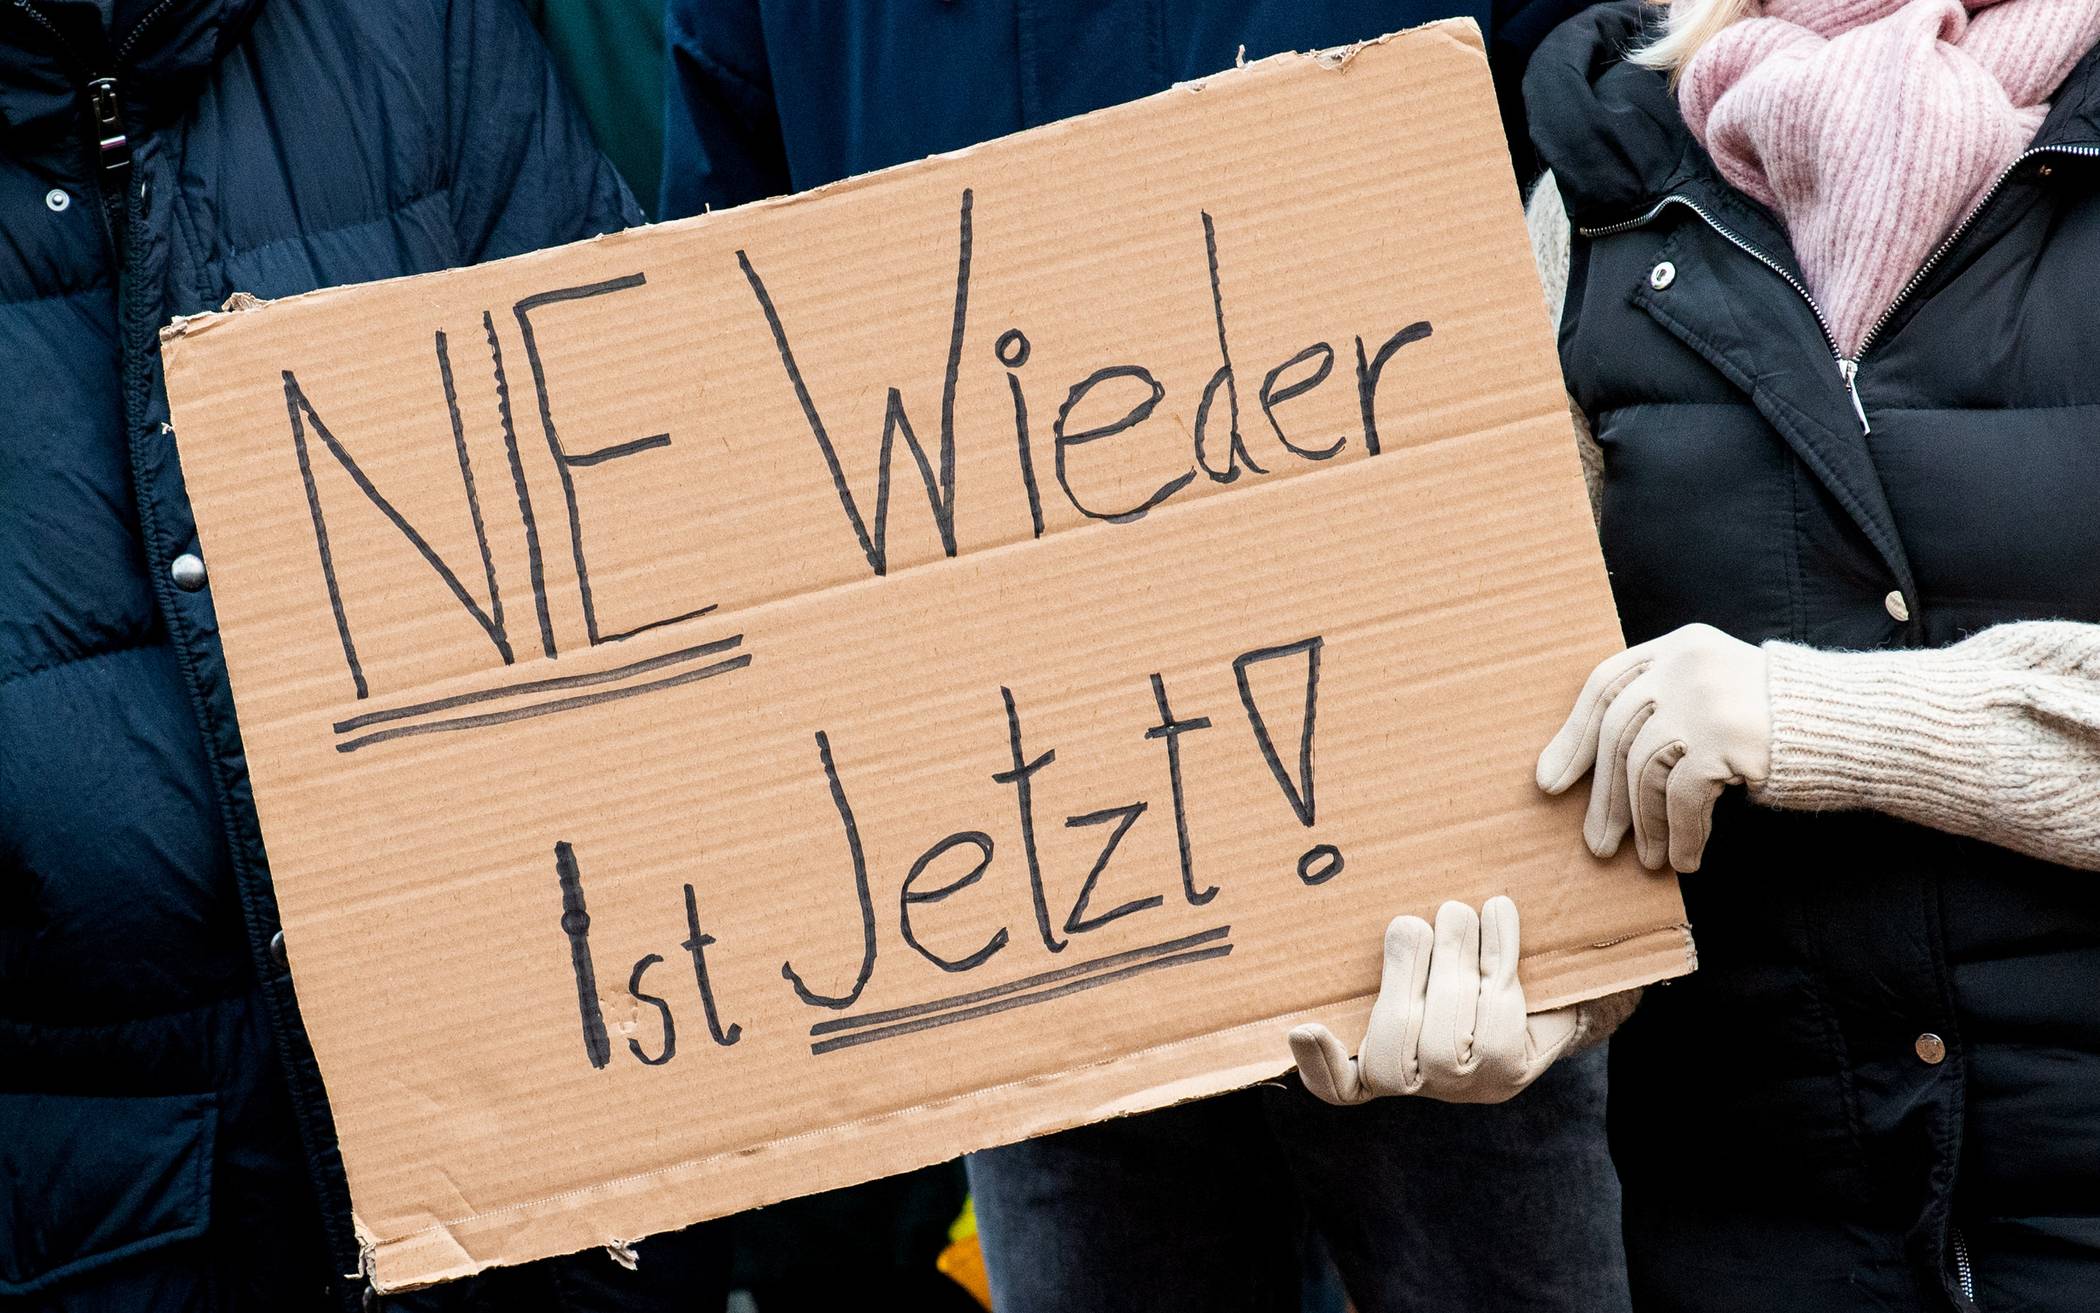 Für ein solidarisches Europa: Demo gegen Rechtsextremismus in Wuppertal am 27. April